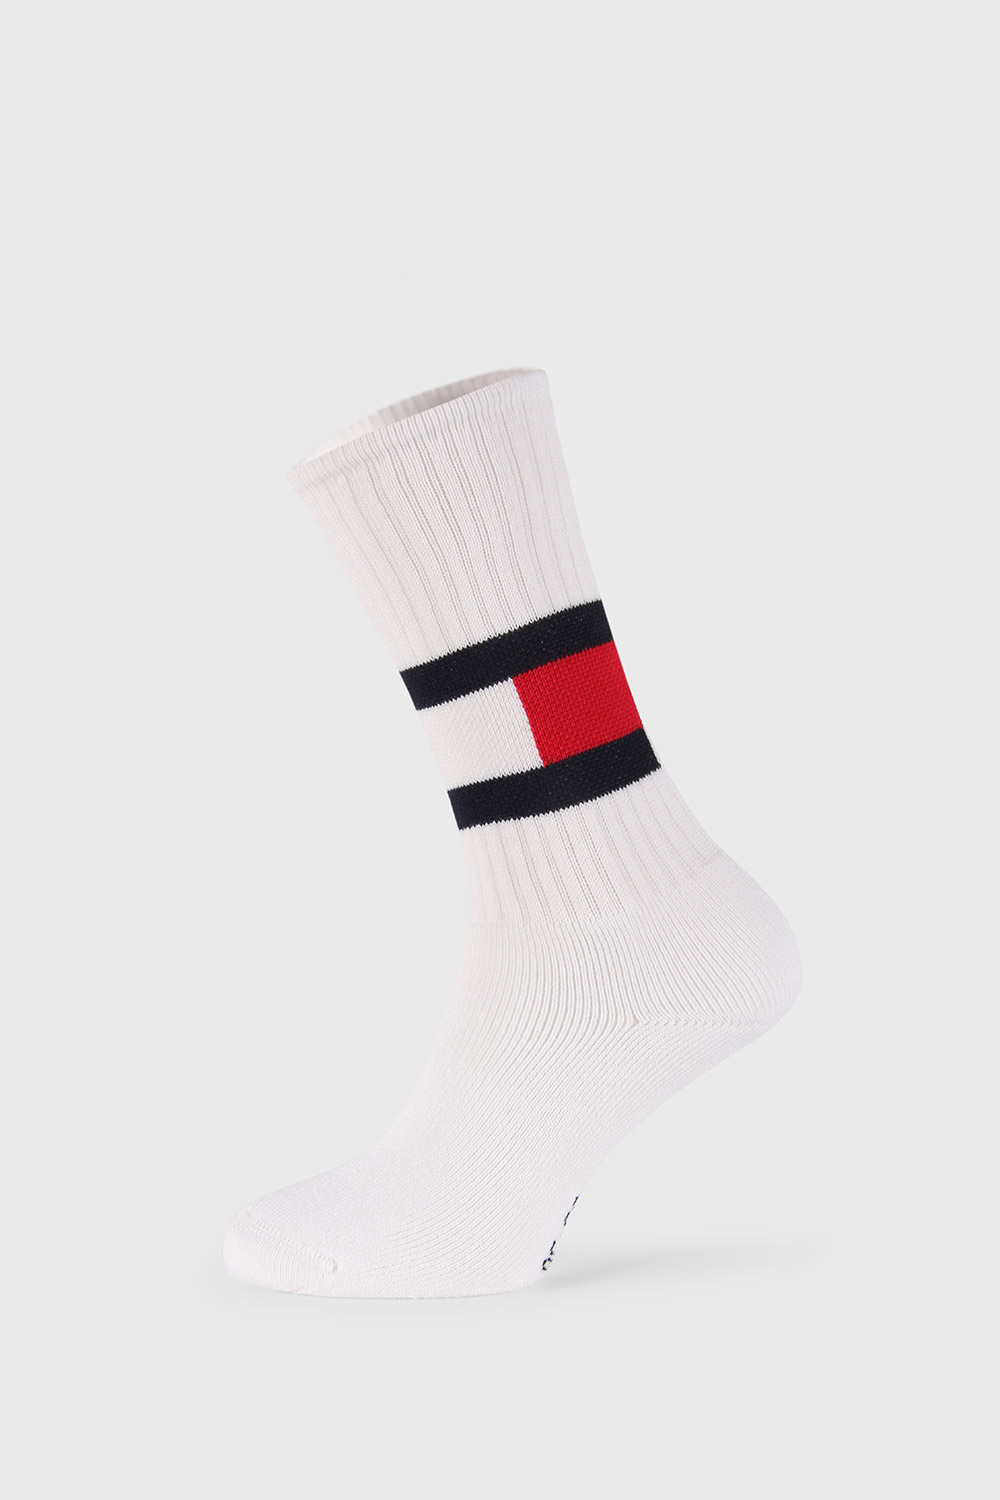 Ψηλές άσπρες κάλτσες Tommy Hilfiger Flag | Astratex.gr